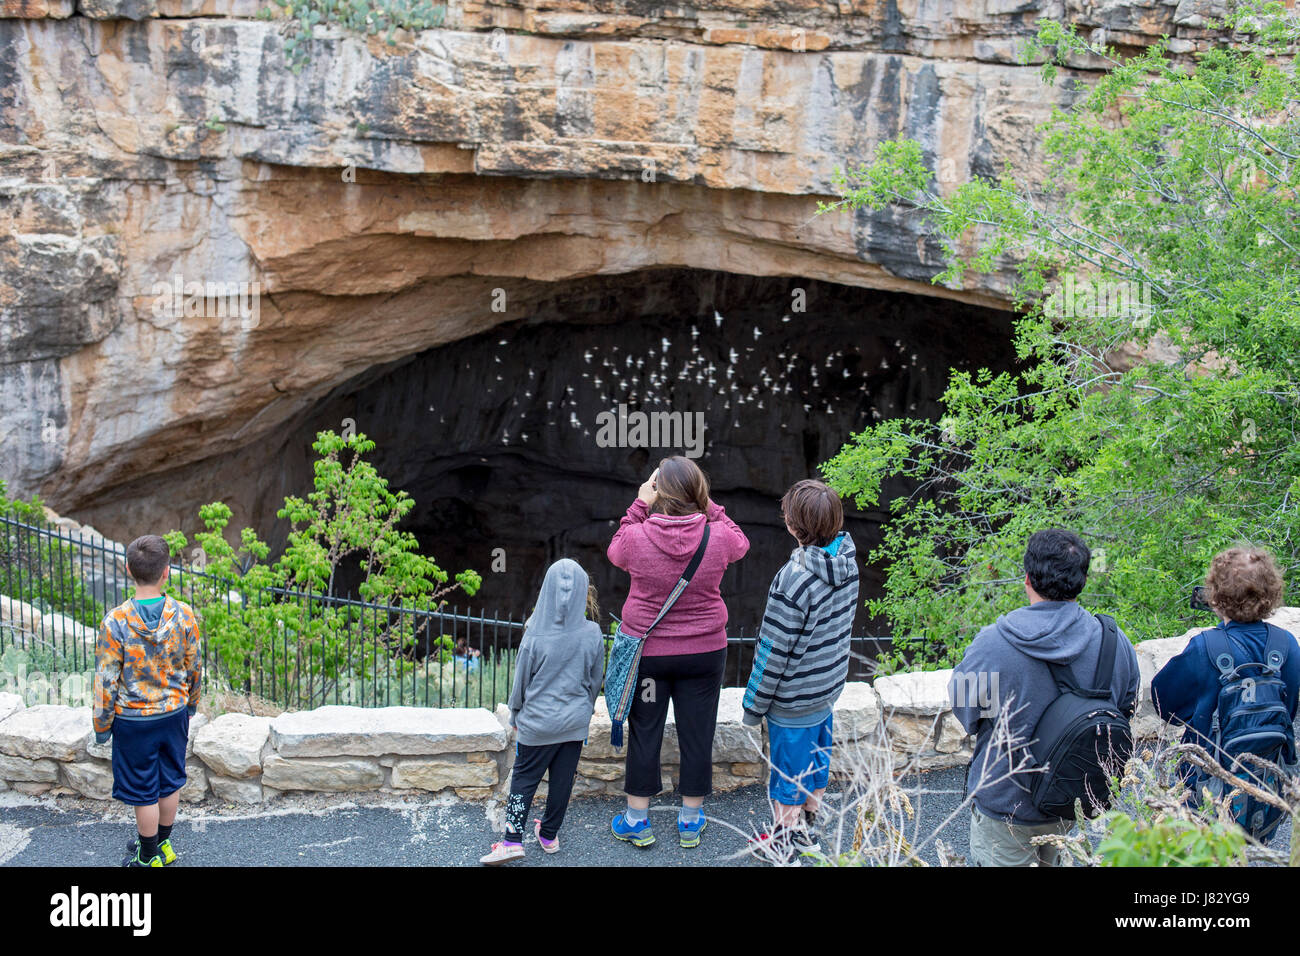 El Parque Nacional de las Cavernas de Carlsbad, Nuevo México - Los turistas observan la cueva de las golondrinas (Petrochelidon fulva) salgan de la entrada natural a las Cavernas de Carlsbad Foto de stock